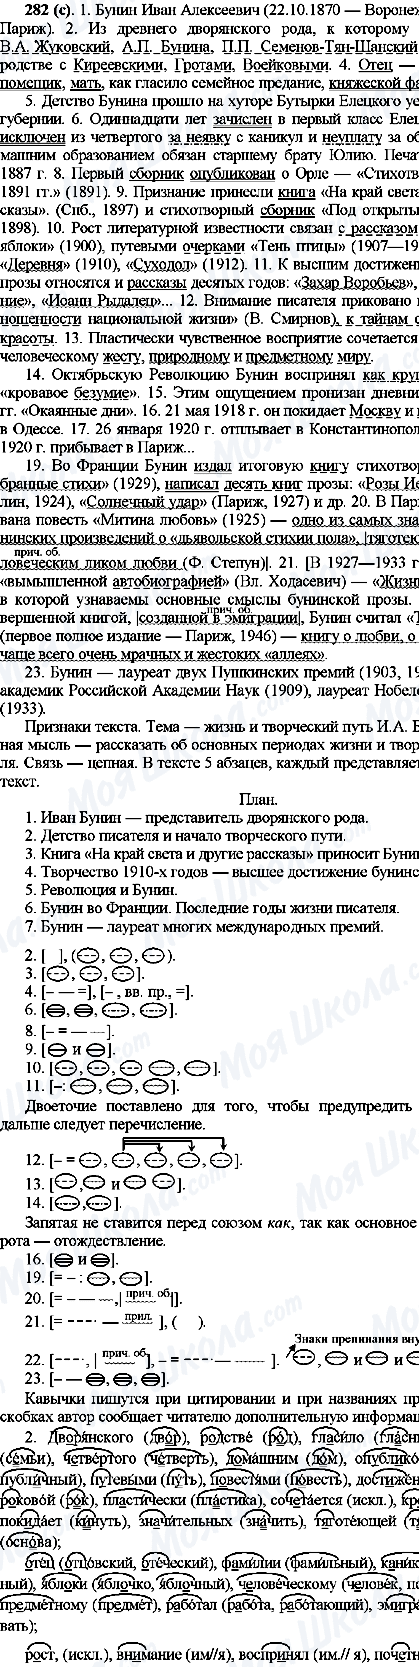 ГДЗ Російська мова 10 клас сторінка 282(с)